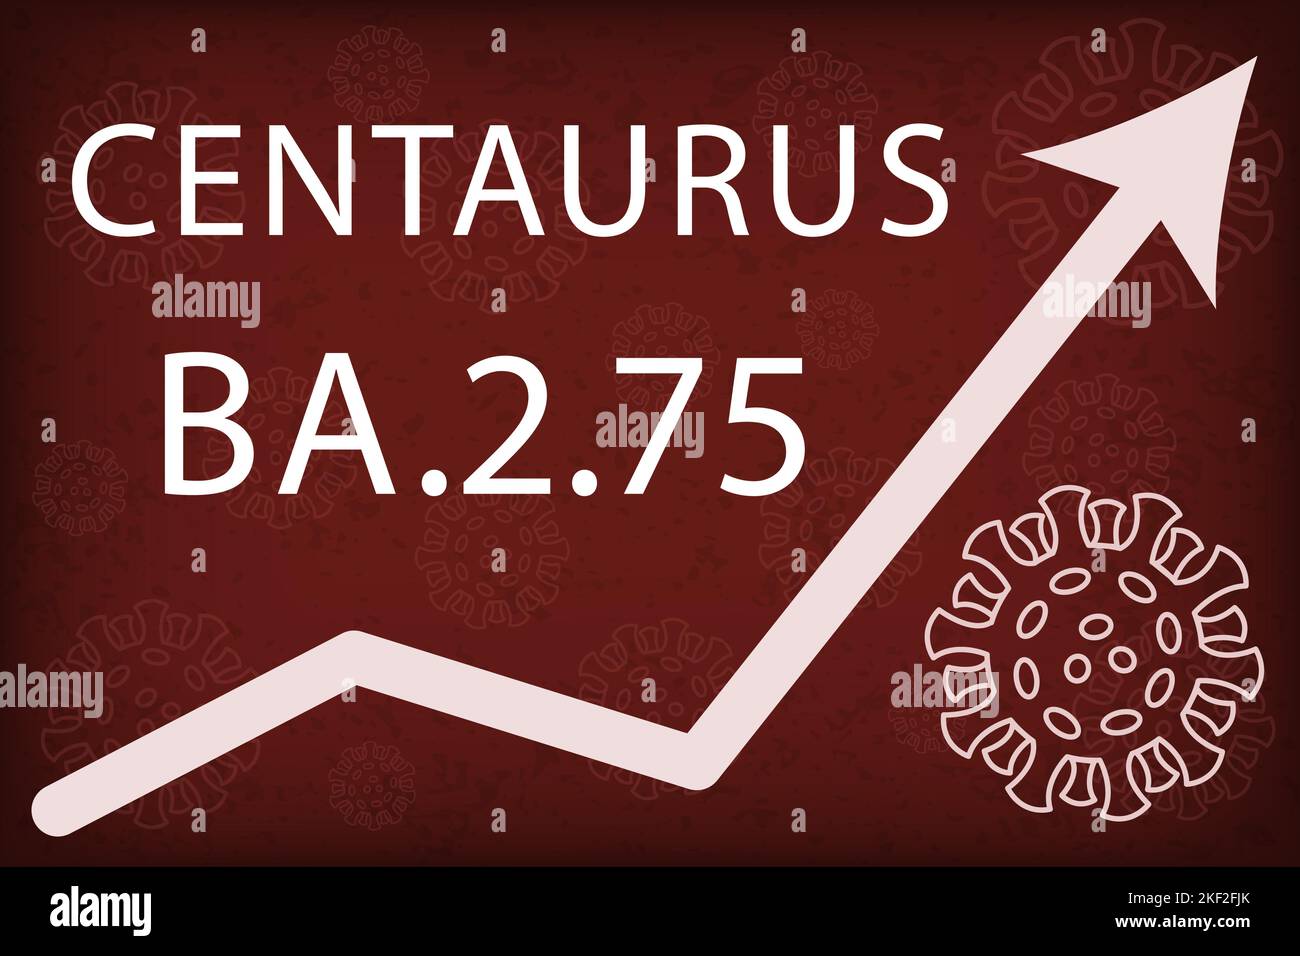 Omicron variante secondaria BA.2,75 anche noto come Centaurus. La freccia mostra un aumento drammatico della malattia. Testo bianco su sfondo rosso scuro con immagini di Illustrazione Vettoriale